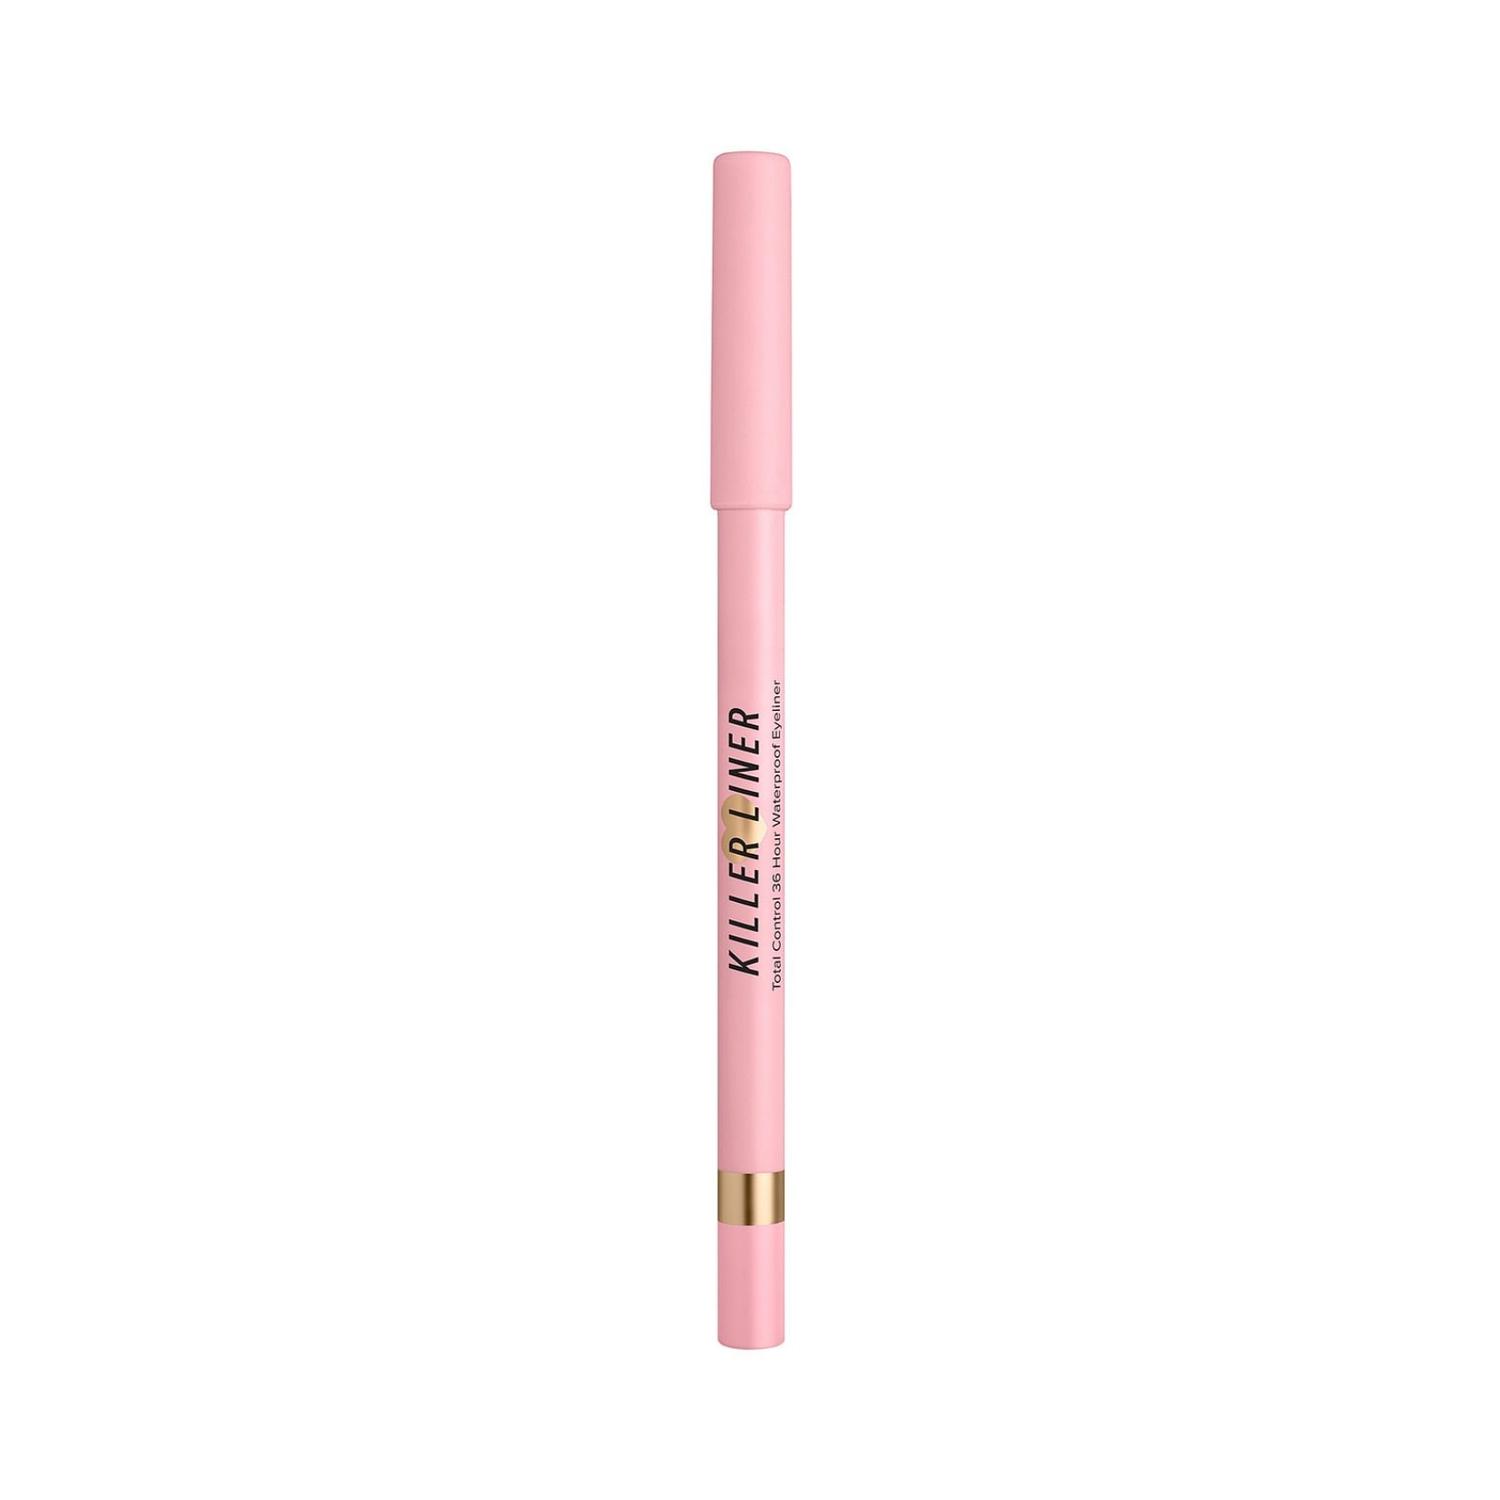 too faced 36 hour killer gel eyeliner pencil - pink (1.1g)